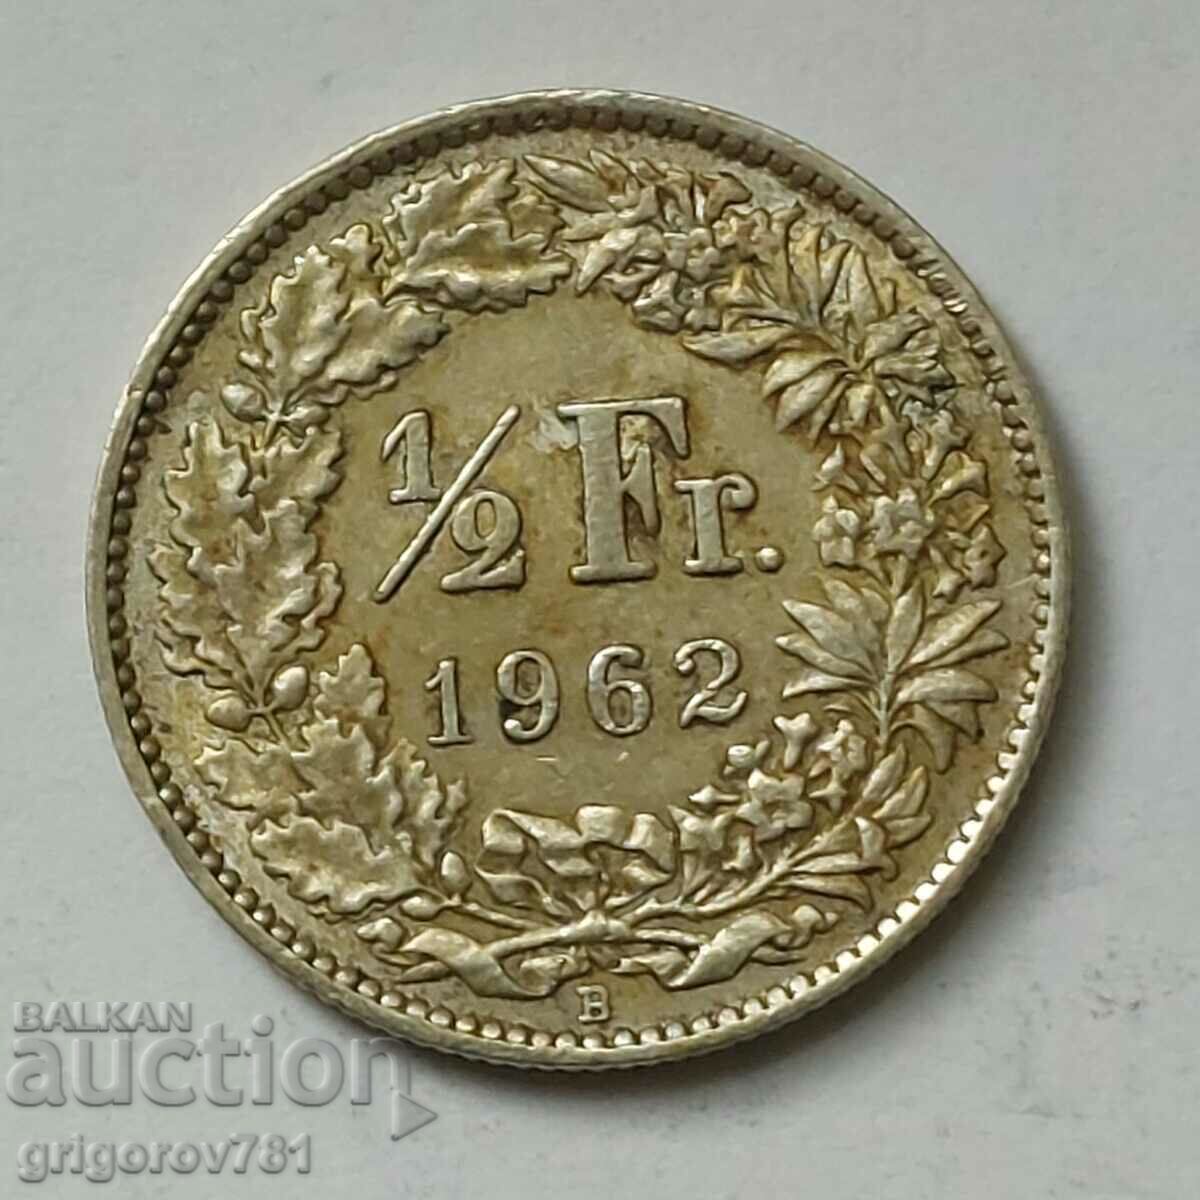 Ασημένιο φράγκο 1/2 Ελβετία 1962 Β - Ασημένιο νόμισμα #53